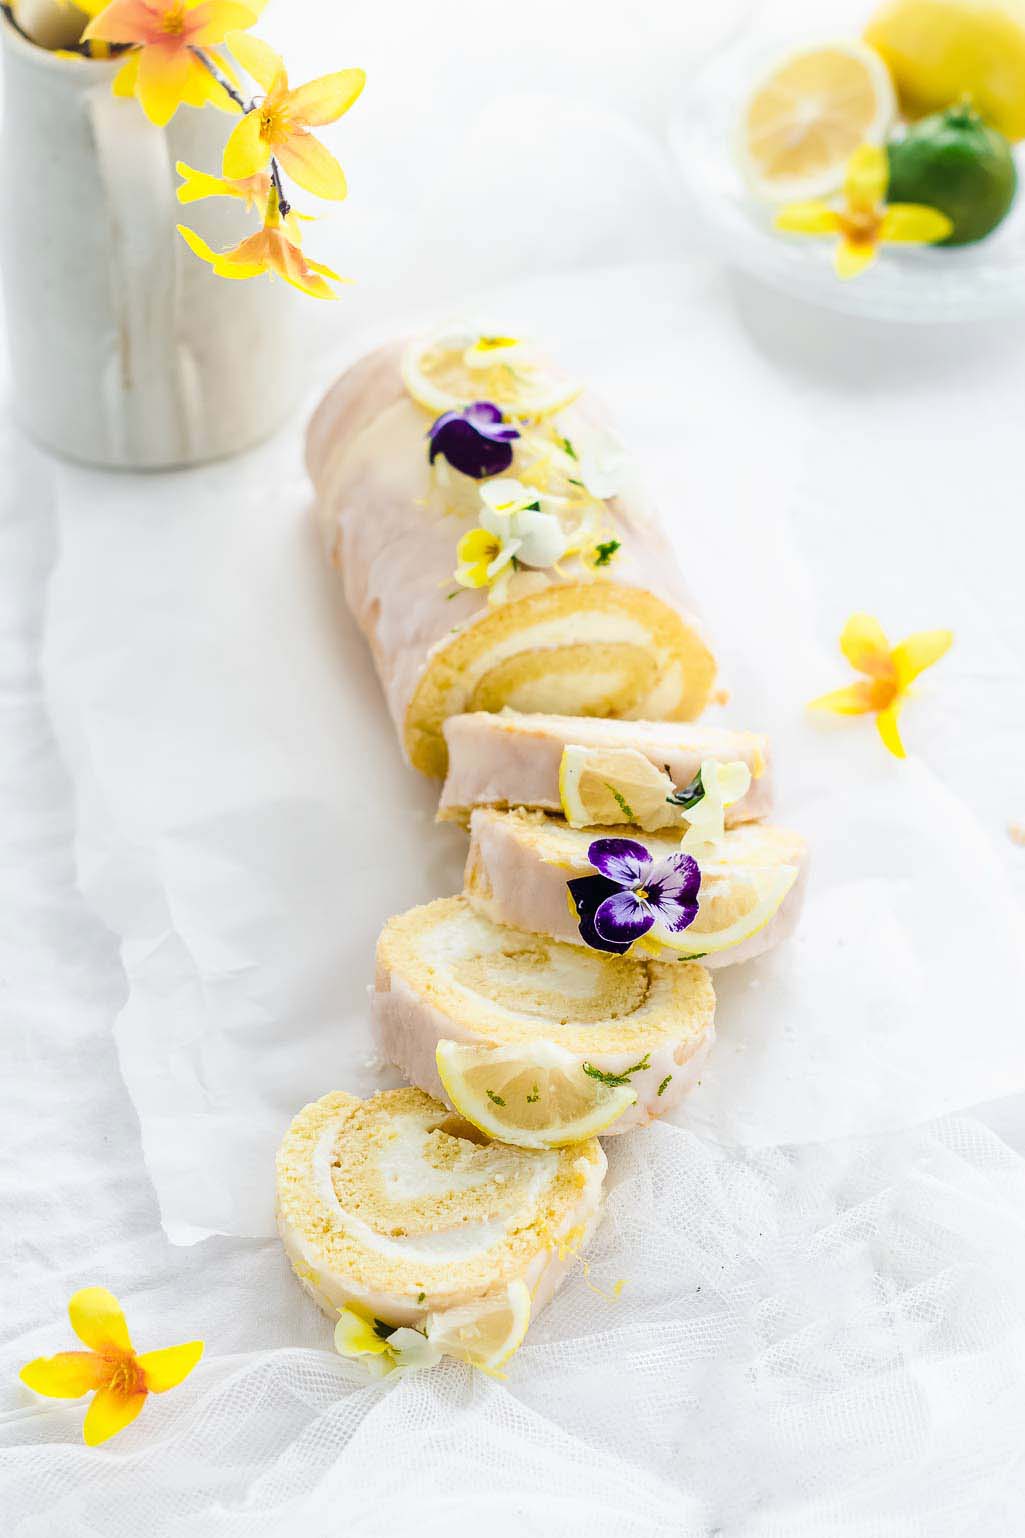 lemon roll cake (lemon swiss roll)